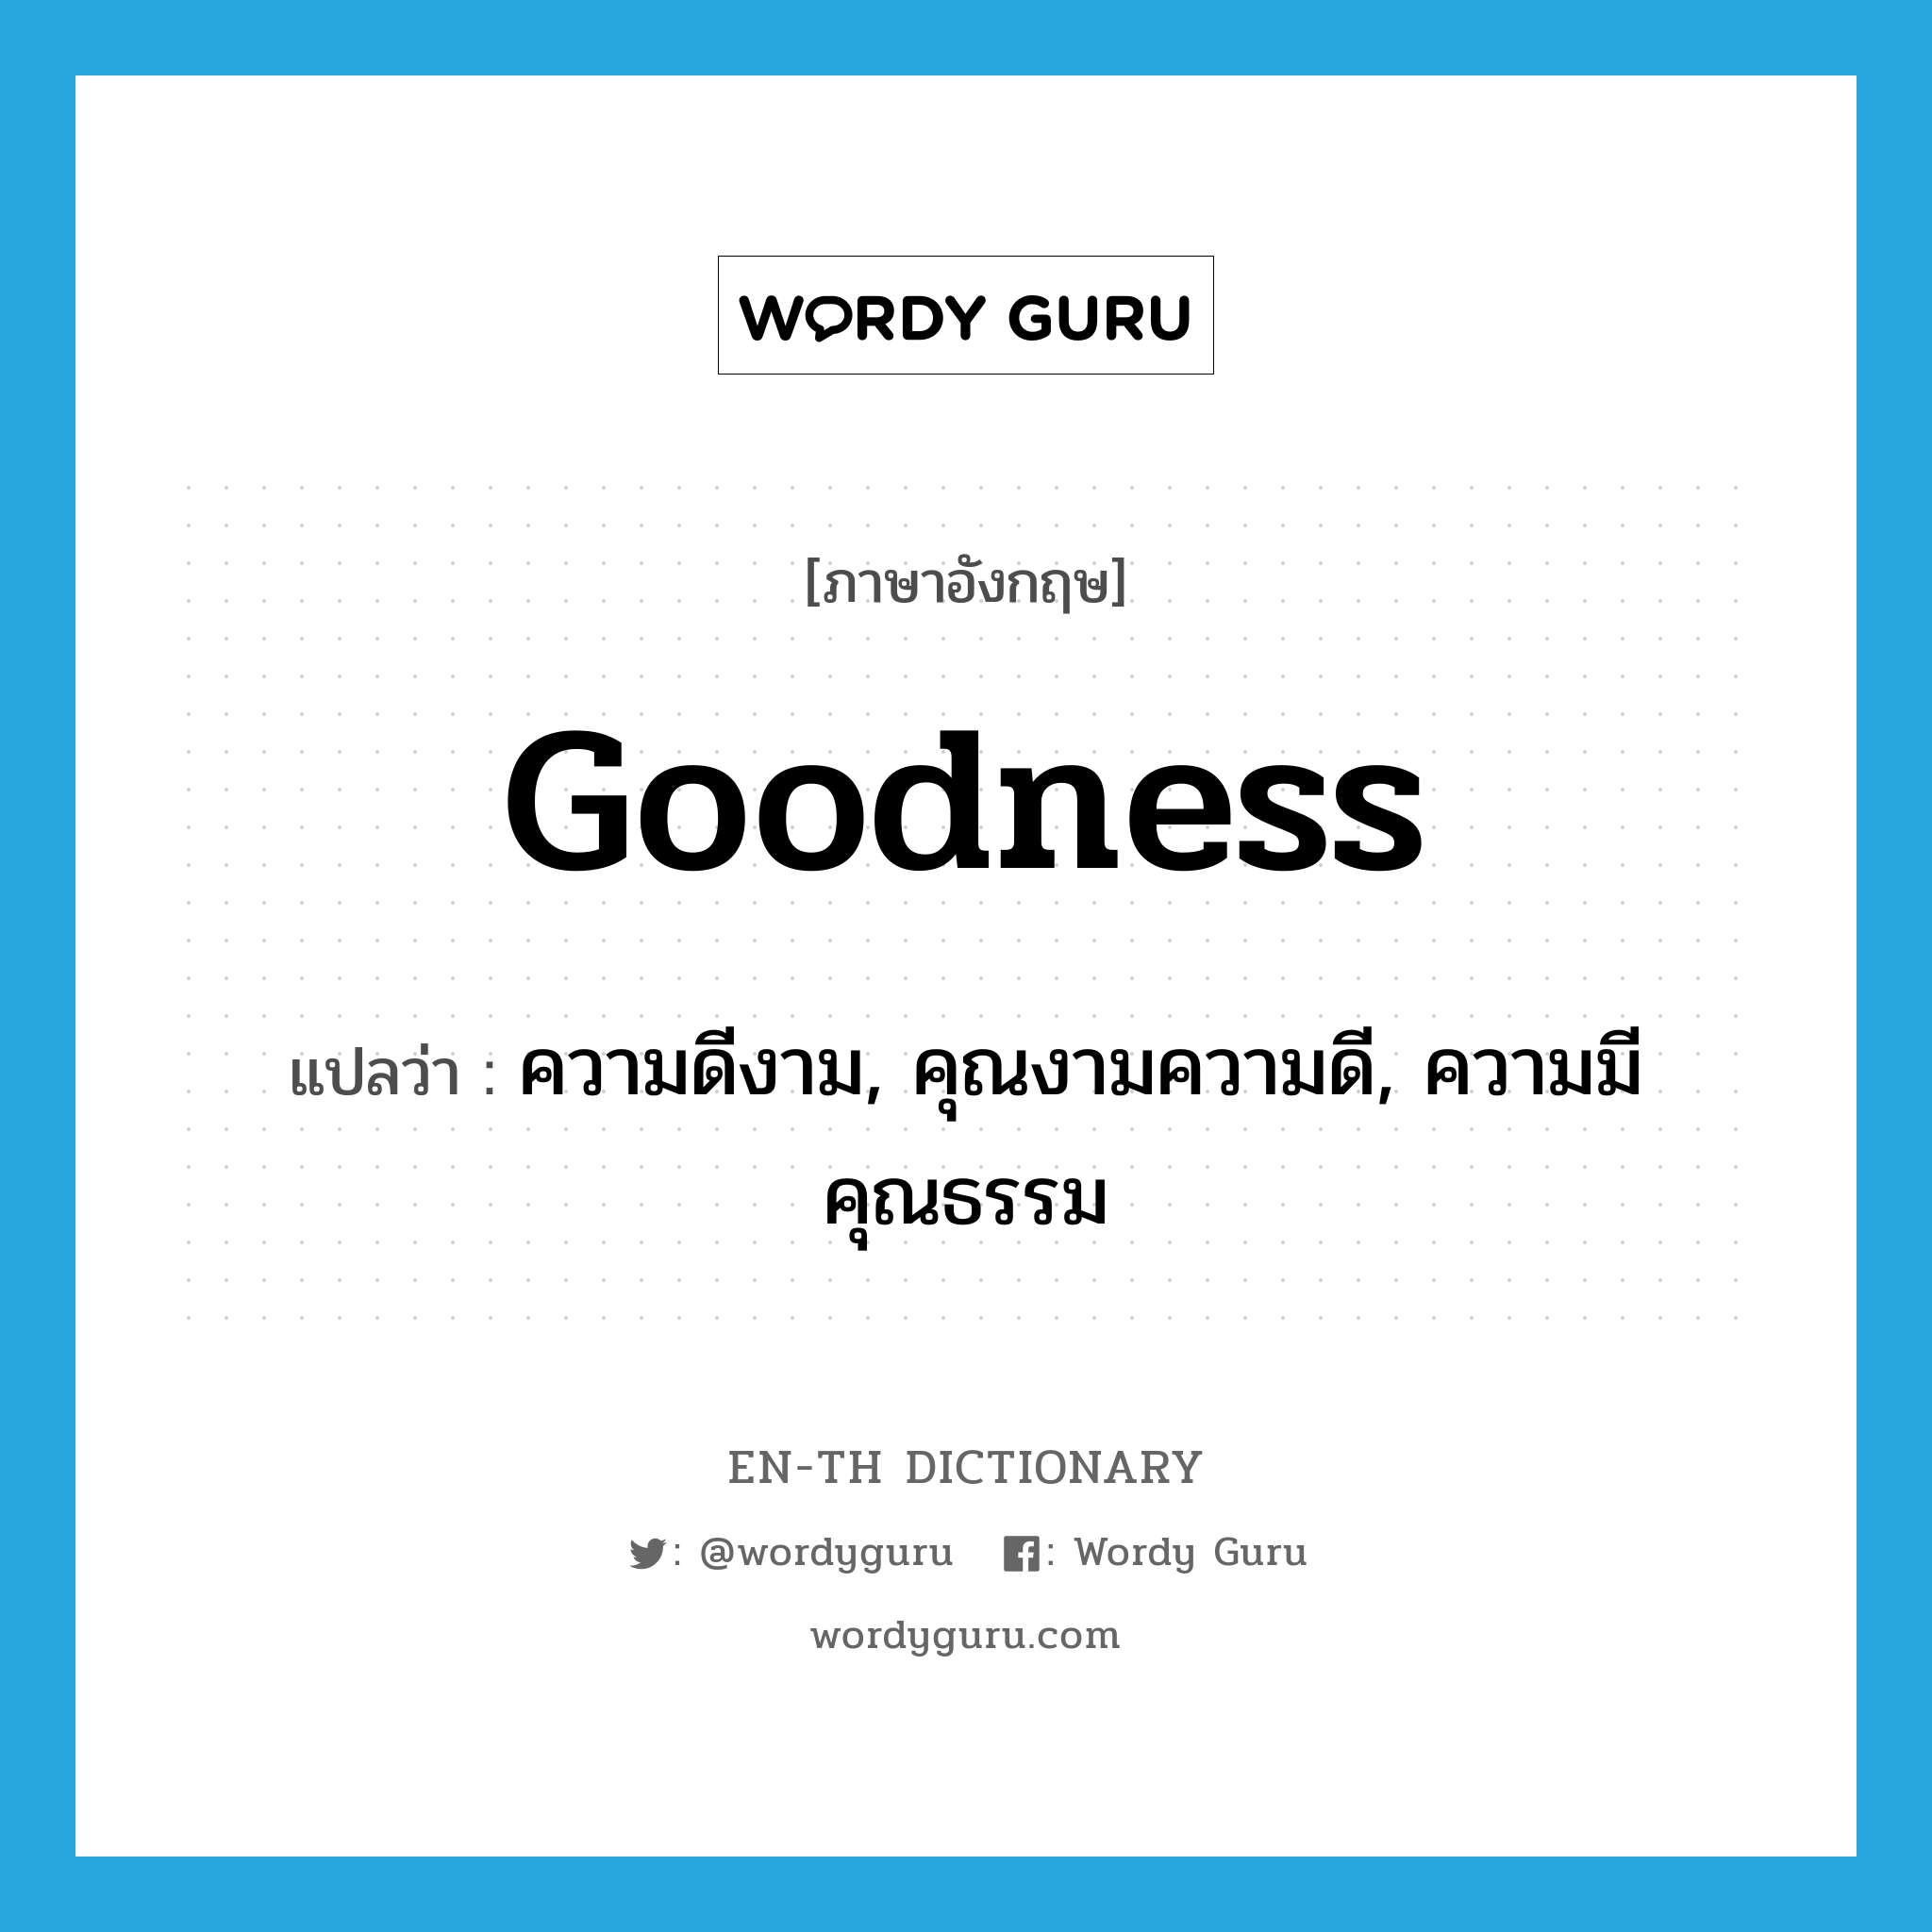 ความดีงาม, คุณงามความดี, ความมีคุณธรรม ภาษาอังกฤษ?, คำศัพท์ภาษาอังกฤษ ความดีงาม, คุณงามความดี, ความมีคุณธรรม แปลว่า goodness ประเภท N หมวด N